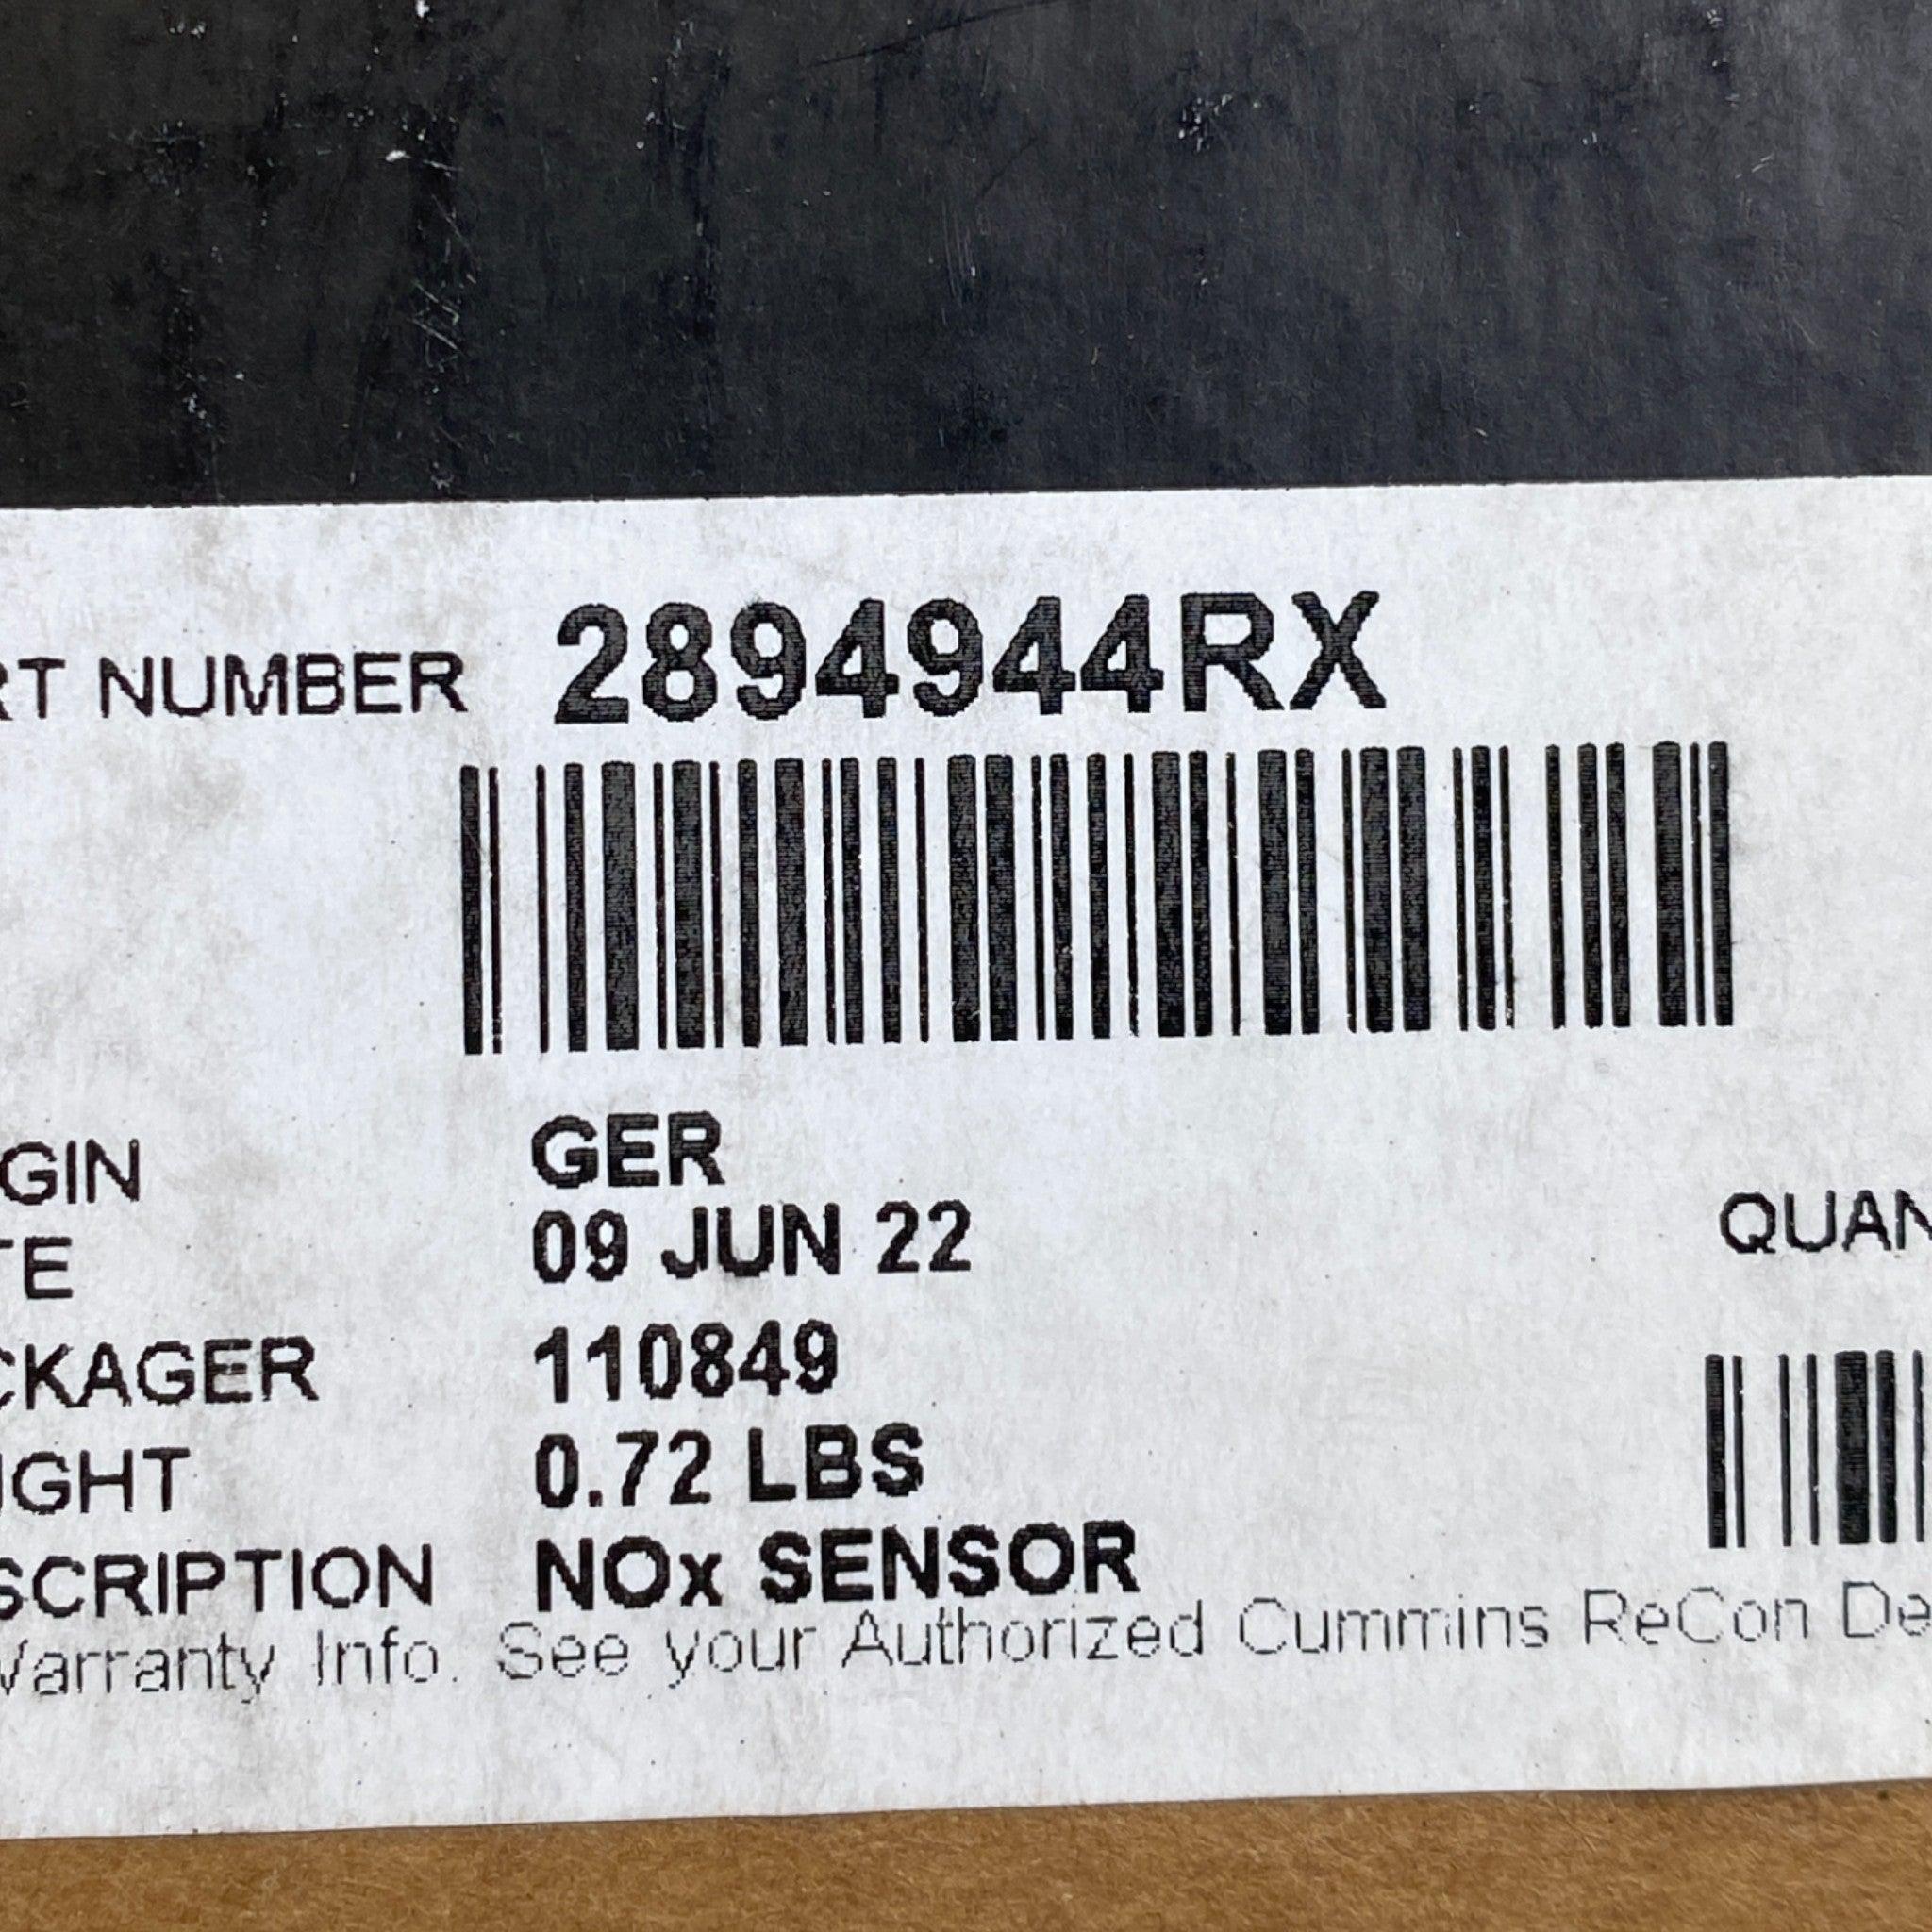 2894944Rx Genuine Cummins Nox Sensor For Cummins Isb